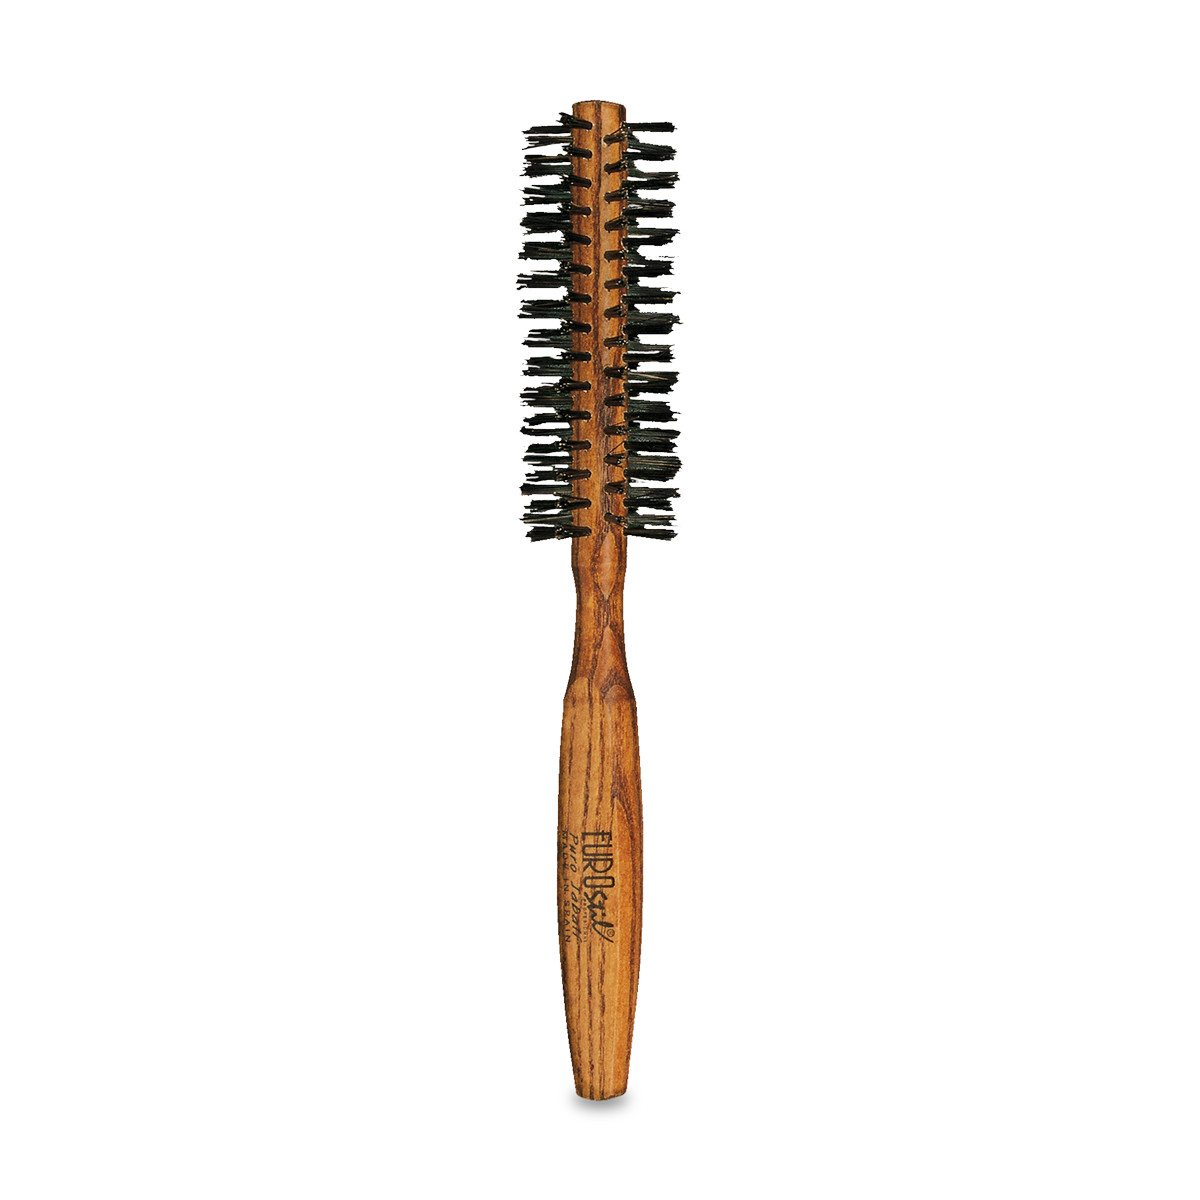 Petite brosse ronde pour brushing cheveux courts, 3,3 cm Mini rouleau  brosse à cheveux avec poils en nylon pour volume, coiffer, boucler et  boucler